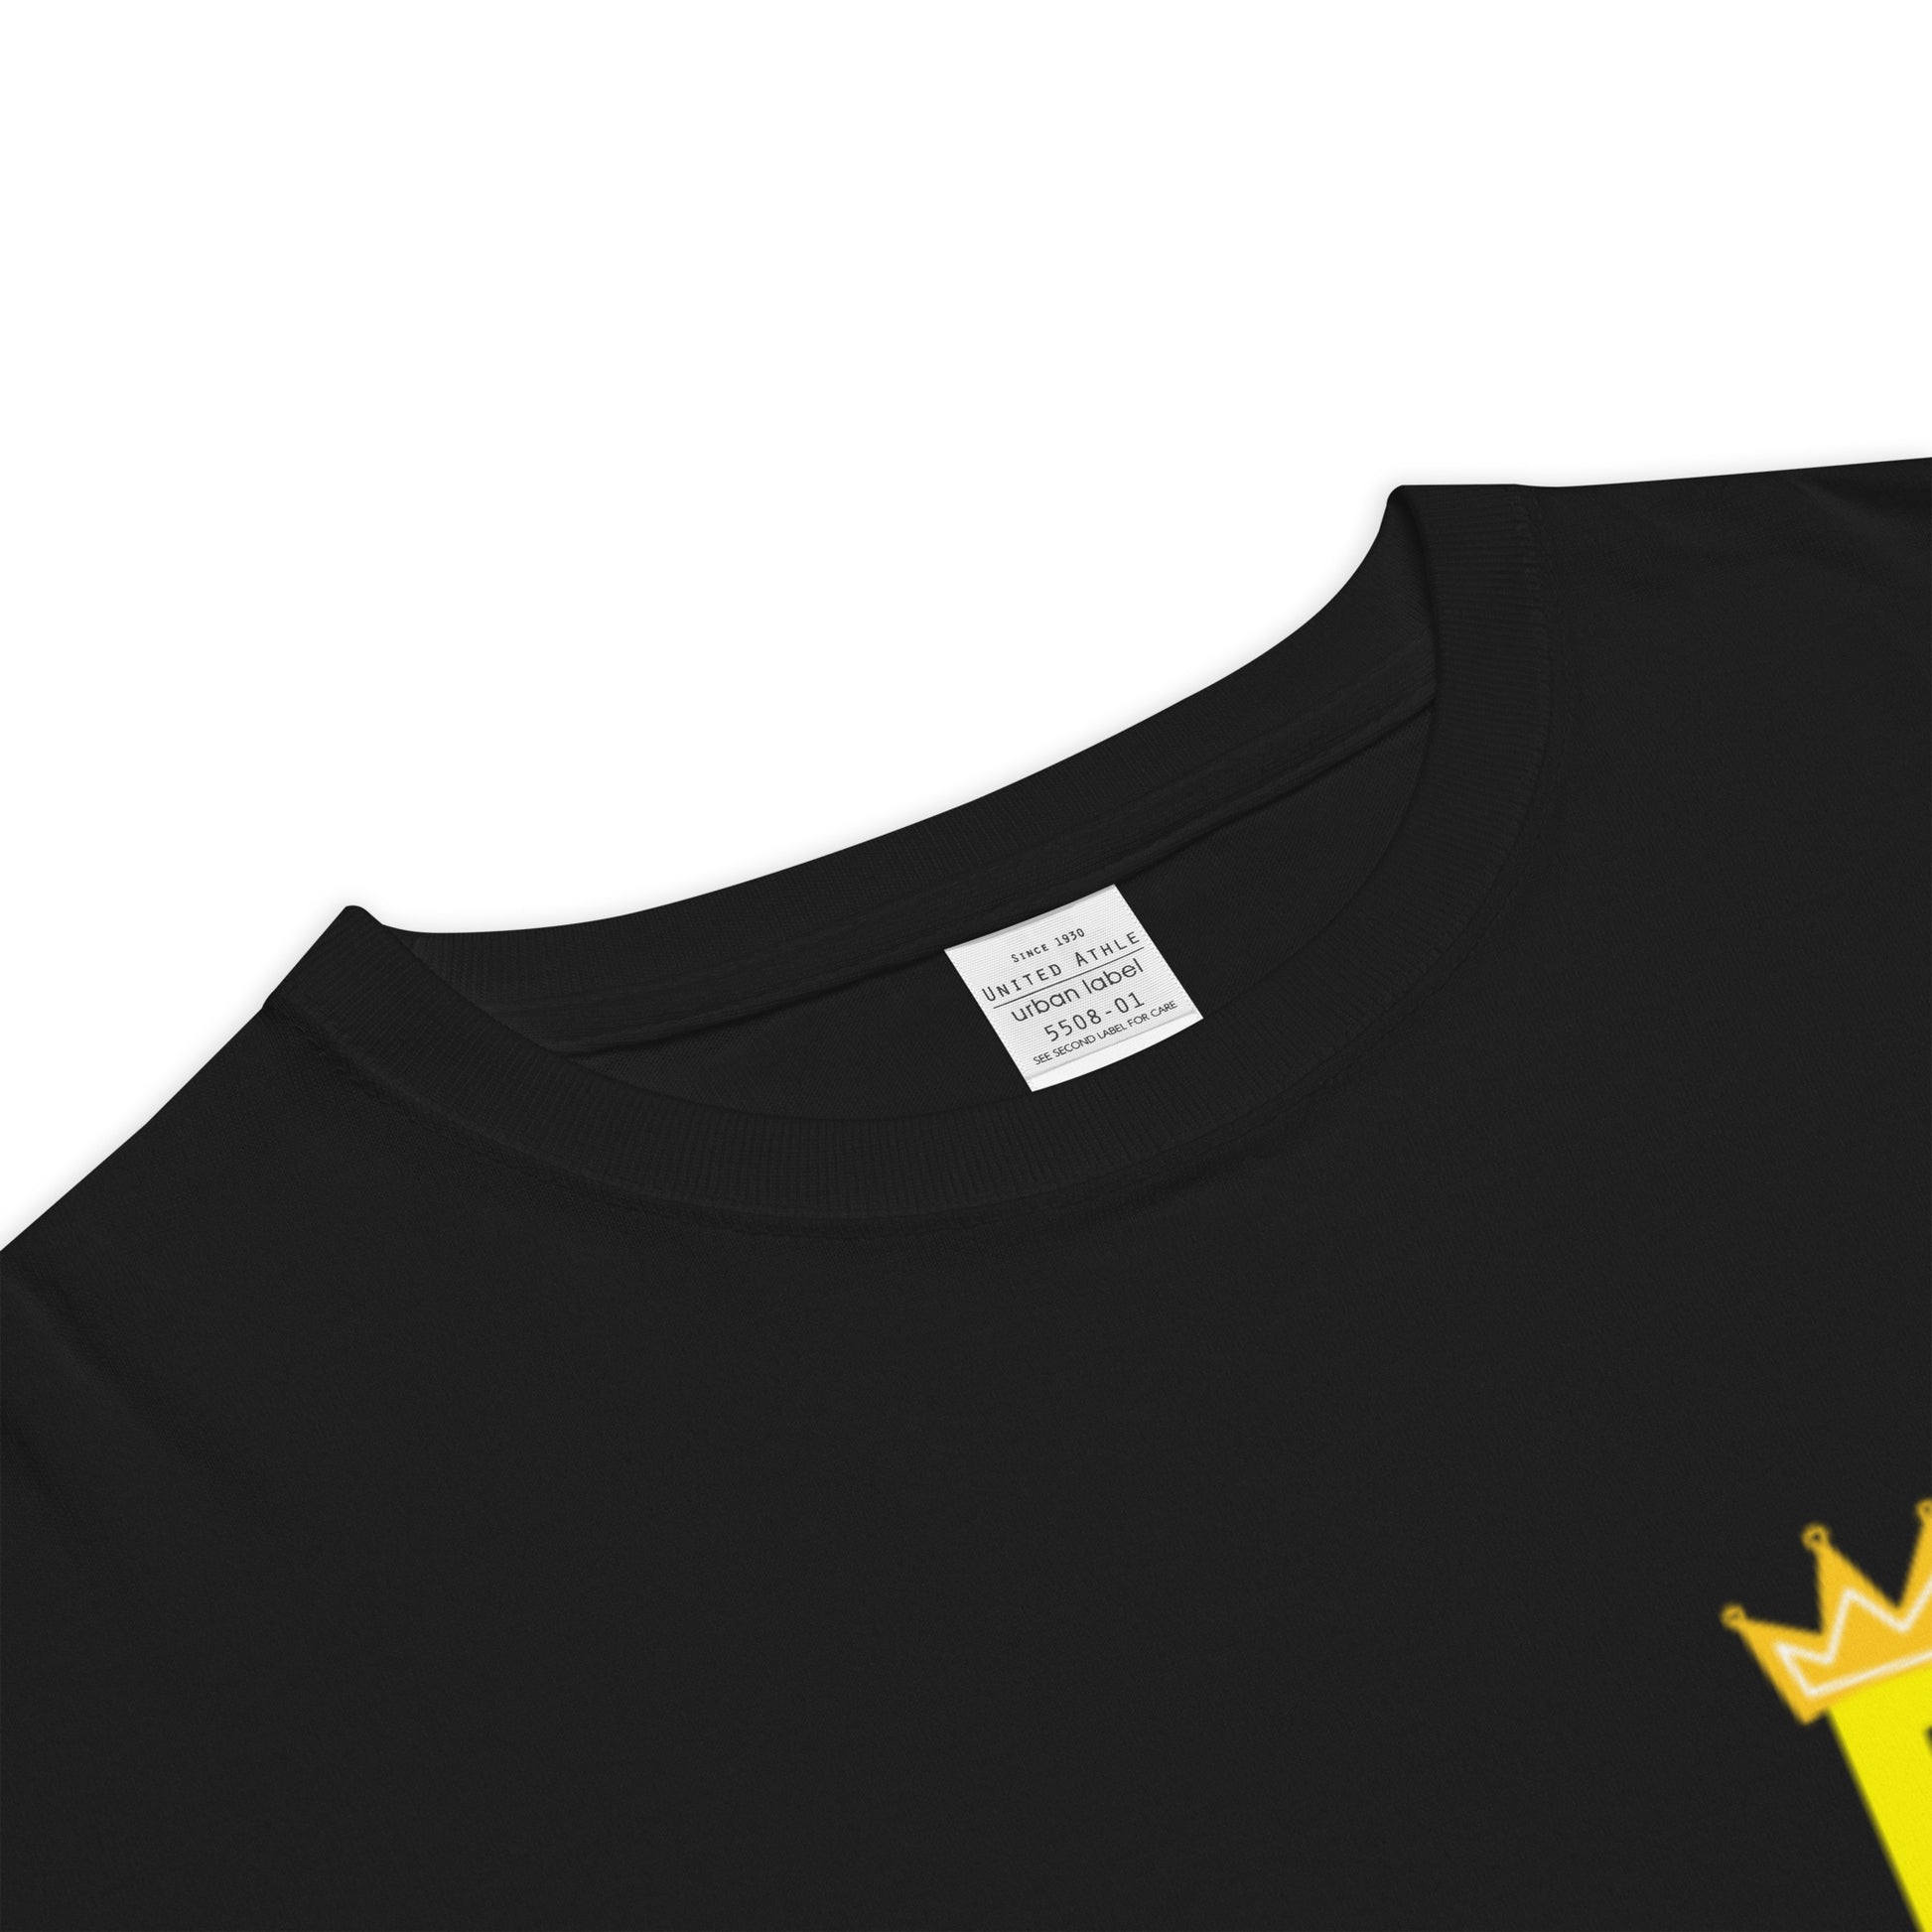 Royal R (Yellow) T-Shirt Black - ROSE Society